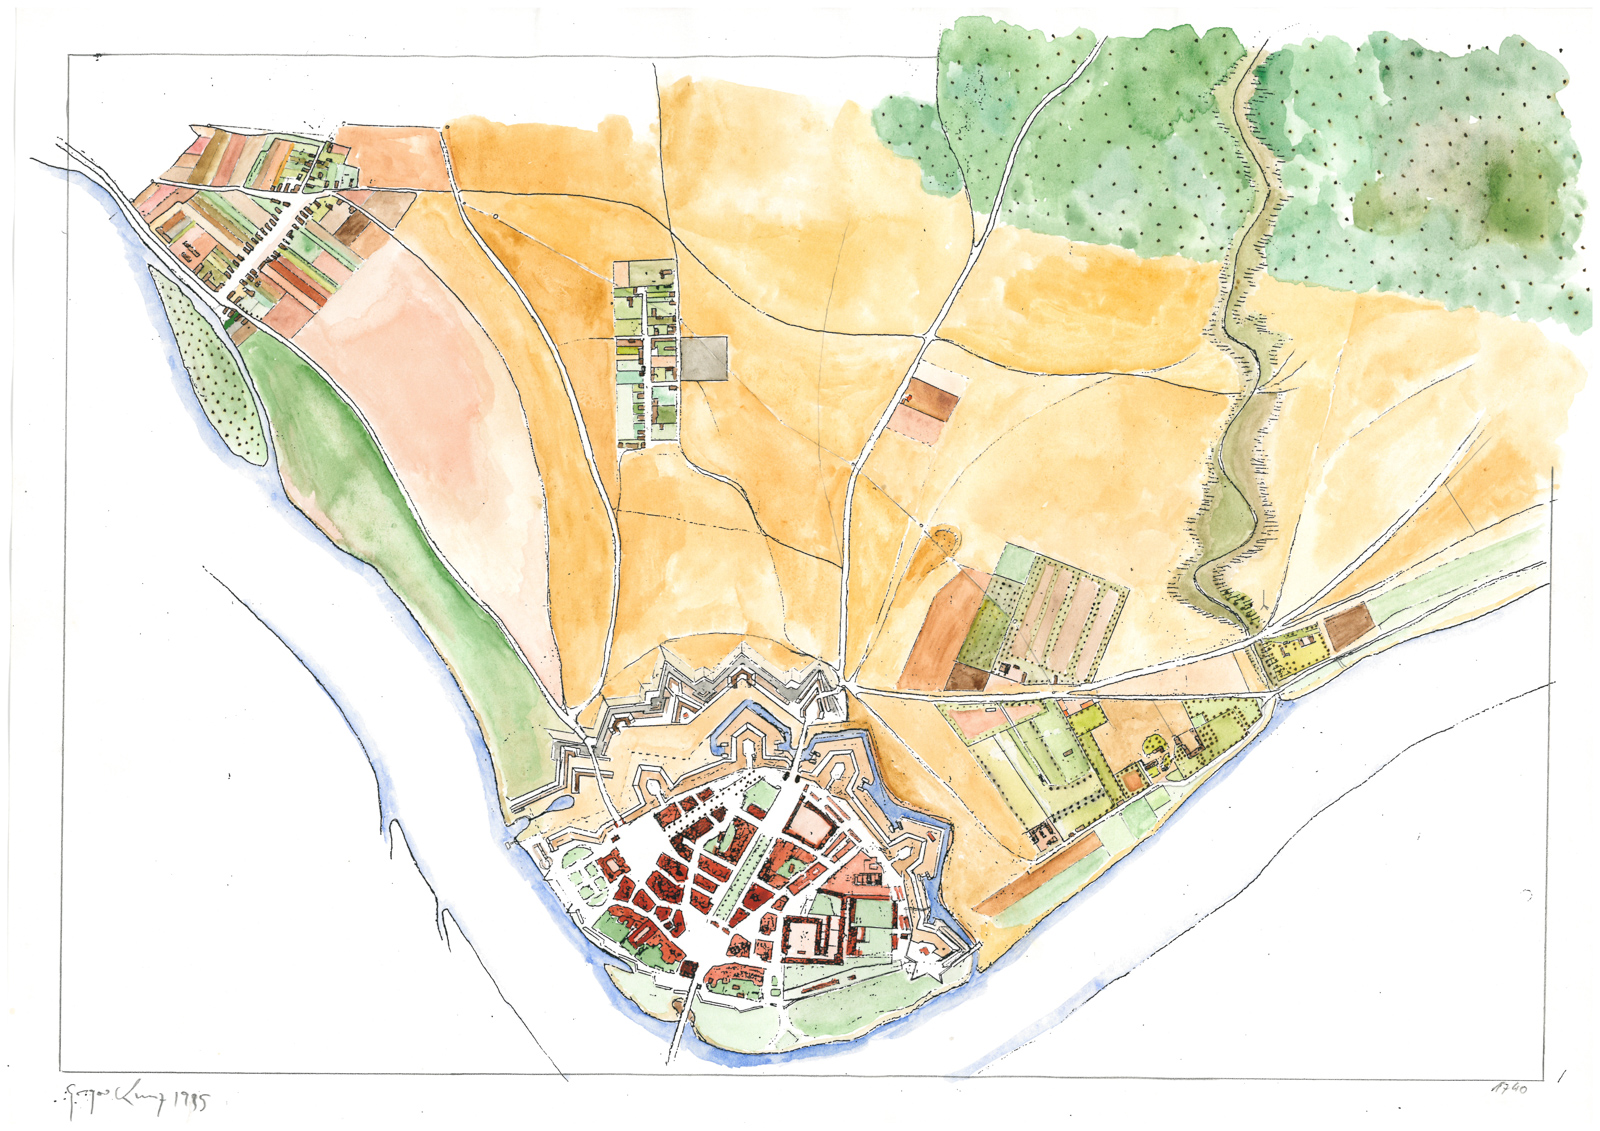 Stadtplan der Dresdner Neustadt mit dem Umland, das langsam bebaut wird